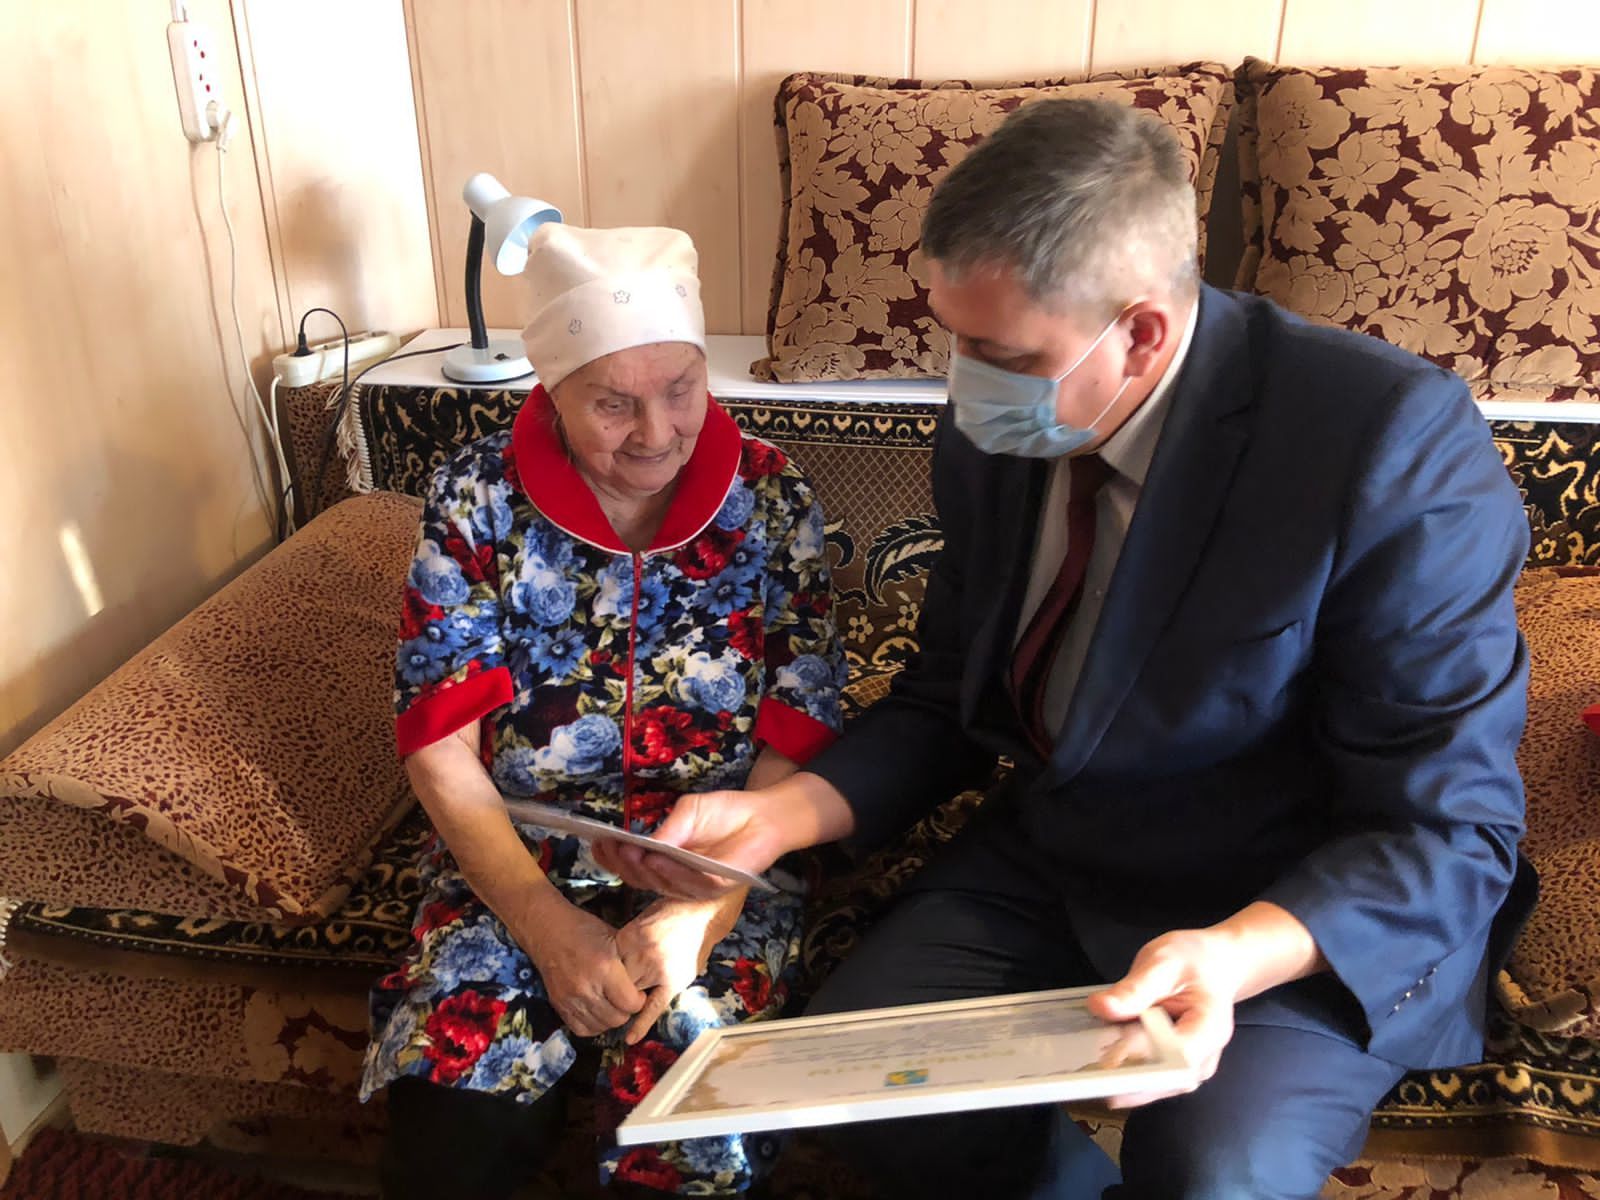 Жительница Ципьи Галеева Клара Нуреевна сегодня отметила 90-летний юбилей (+фото)